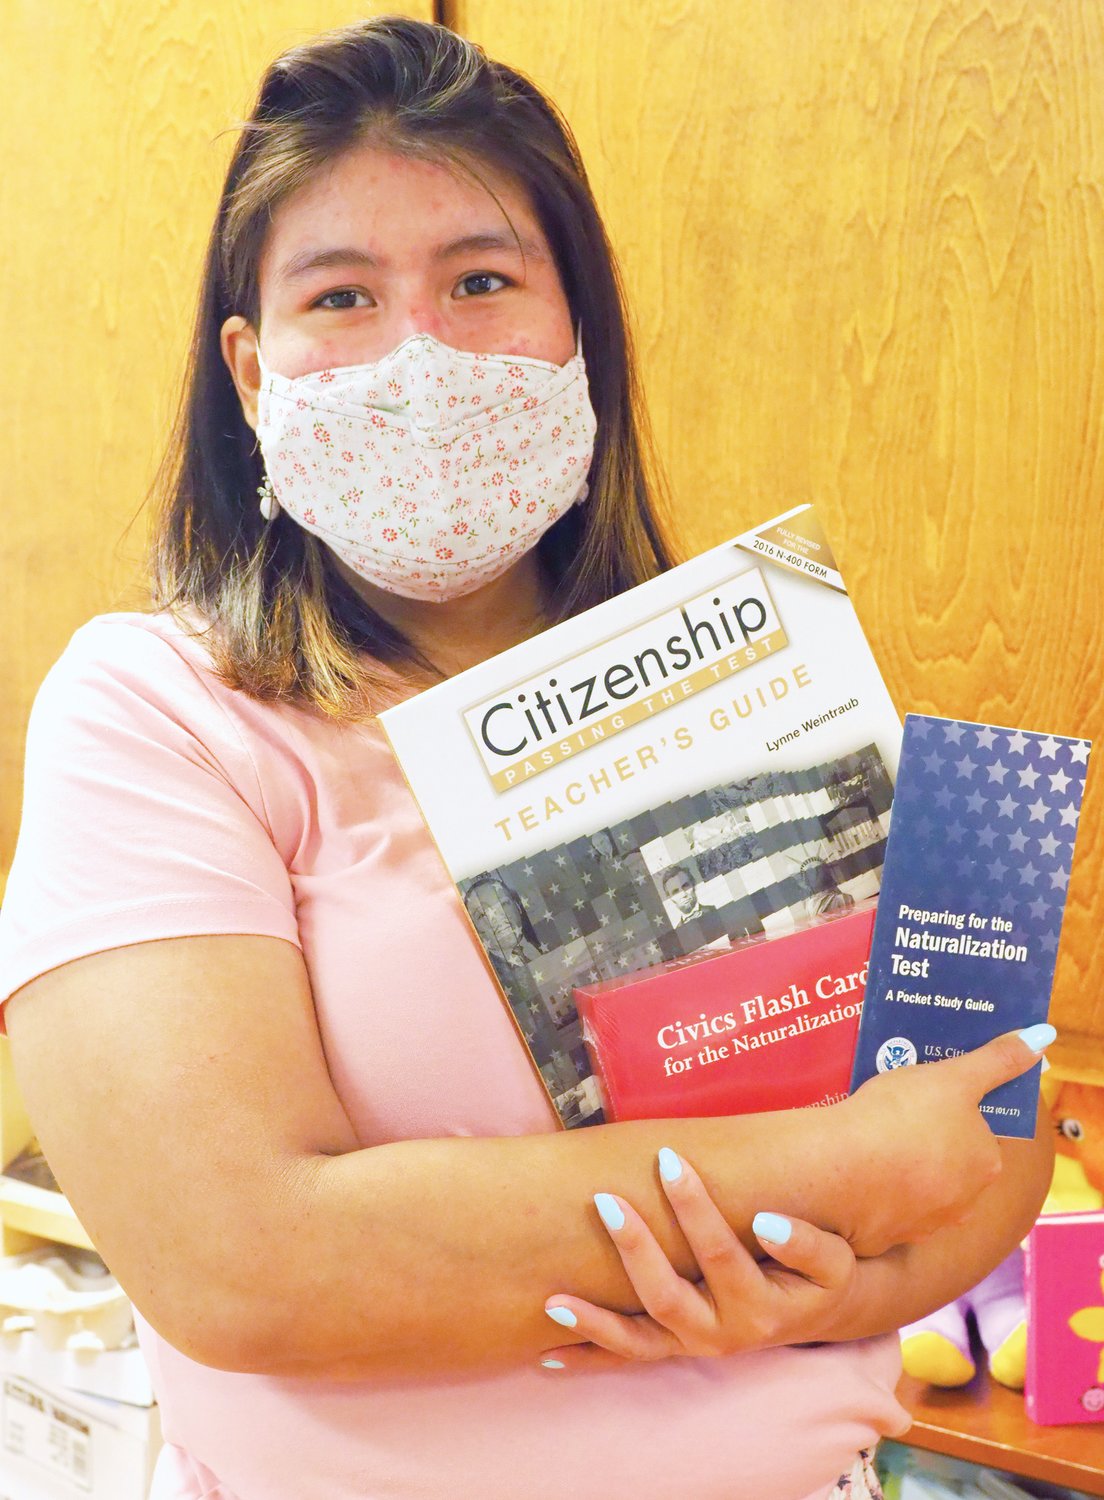 Leslie Ocampo, una coordinadora de programas de Chatham Literacy, sostiene los materiales didácticos sobre ciudadanía de la organización. Ella administra el programa de ciudadanía de Chatham Literacy, que ha estado ayudando a los inmigrantes de Chatham a convertirse en ciudadanos estadounidenses desde 2009.